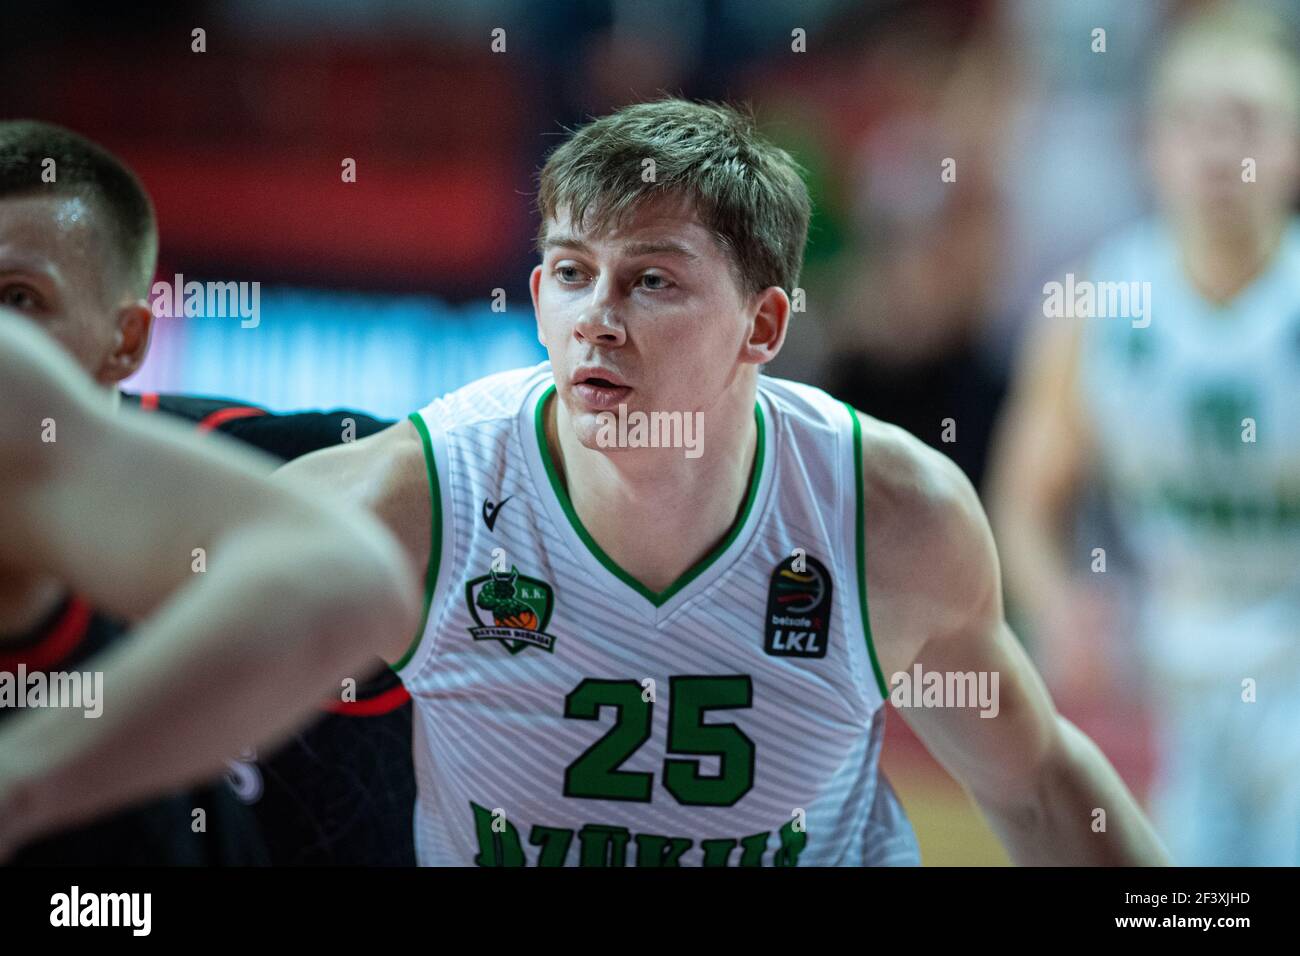 2021-03-17. Matas Jucikas - Basketball player lituano, BC Dzukija, Alytus Foto Stock